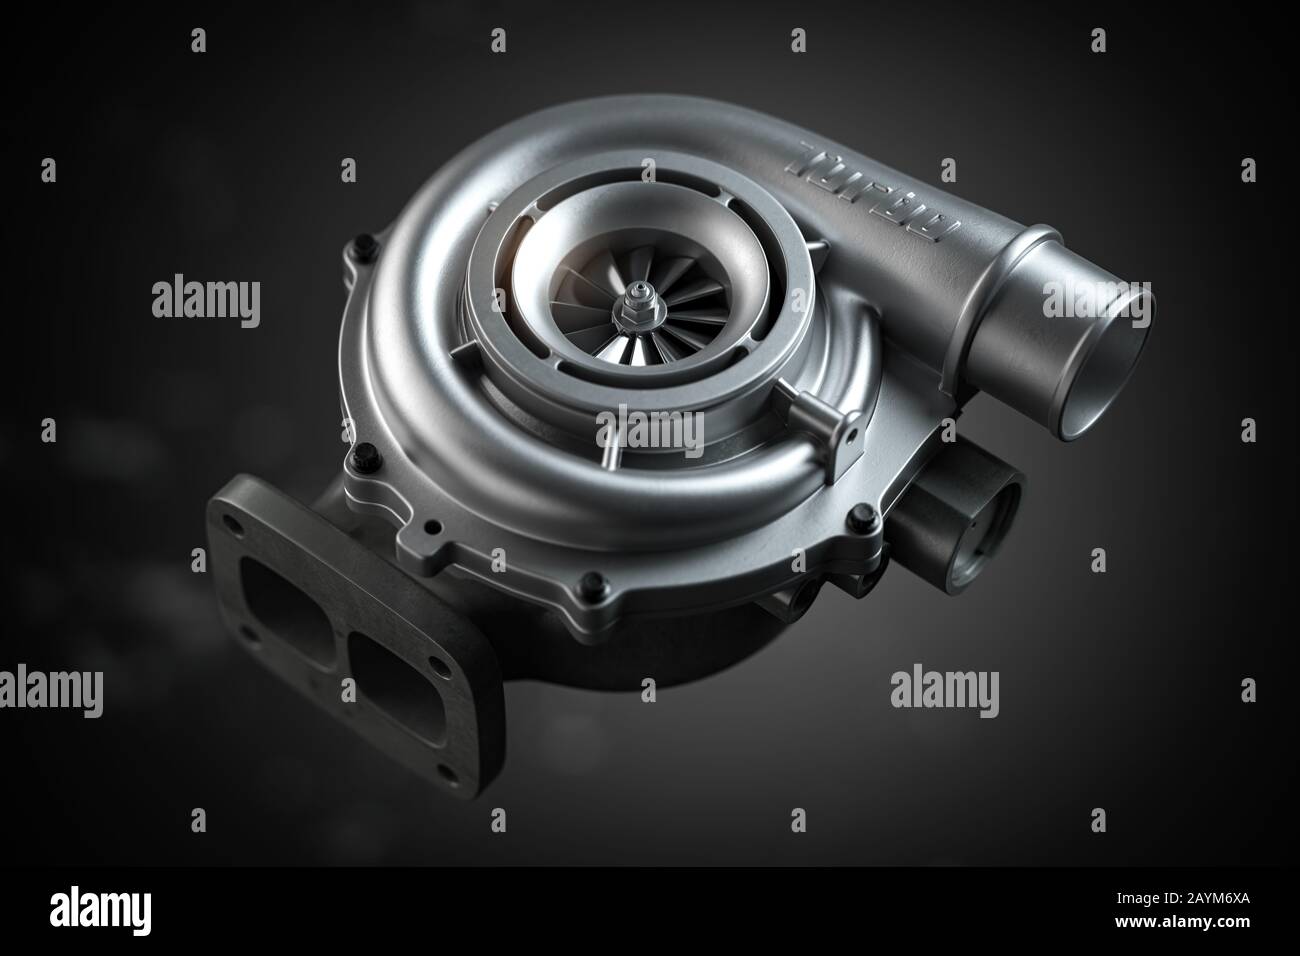 Turbocompresseur de voiture sur fond noir. Concept de technologie de moteur turbo à partie automatique. illustration tridimensionnelle Banque D'Images